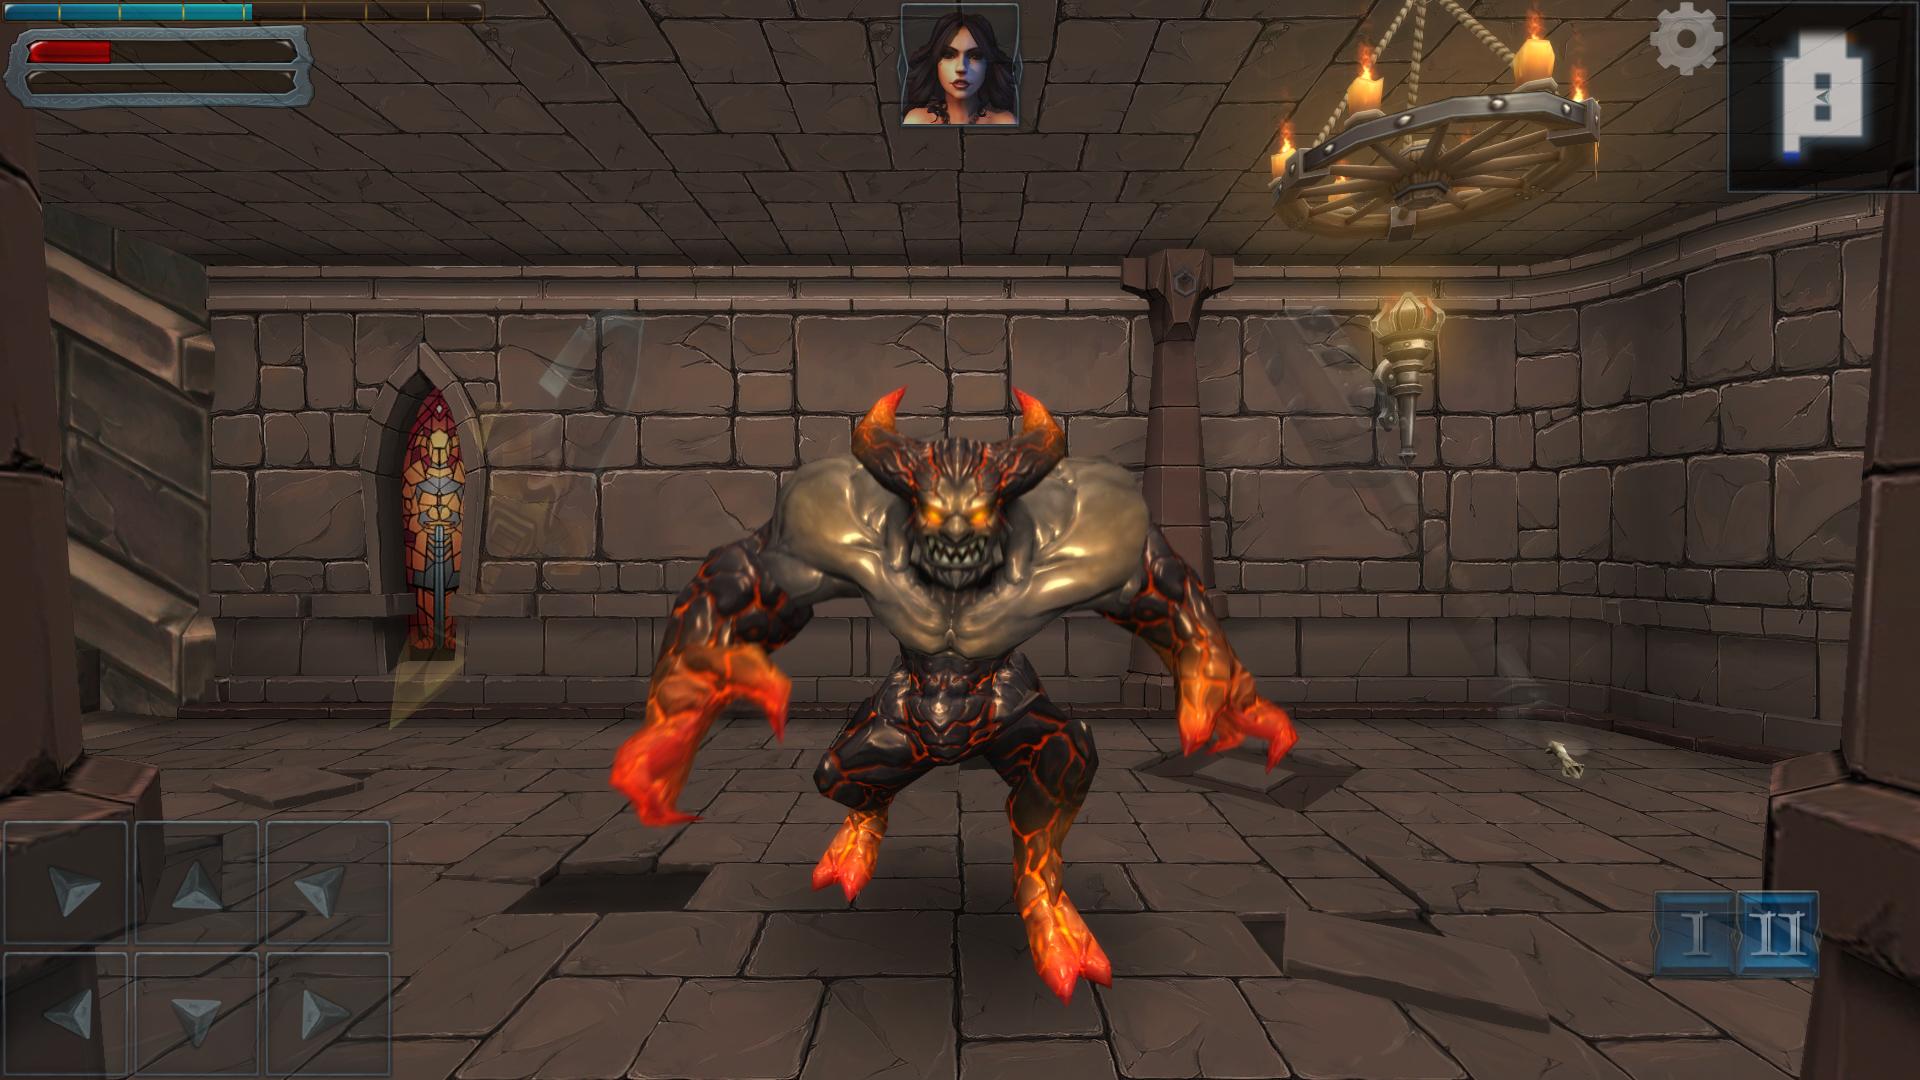 Dungeon Hero screenshot